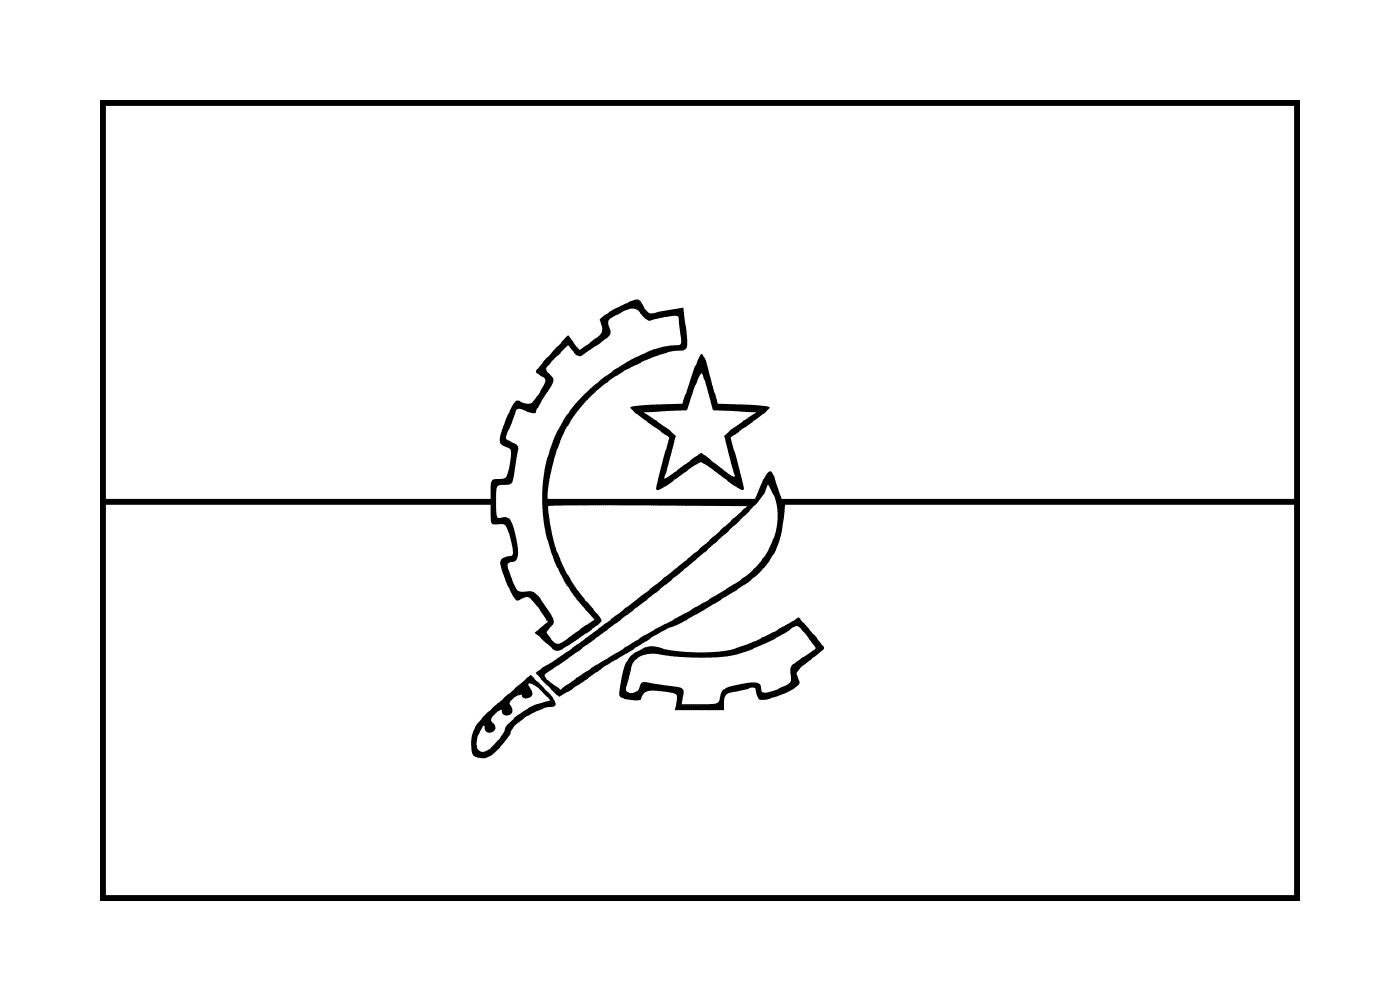  Flag of Angola 